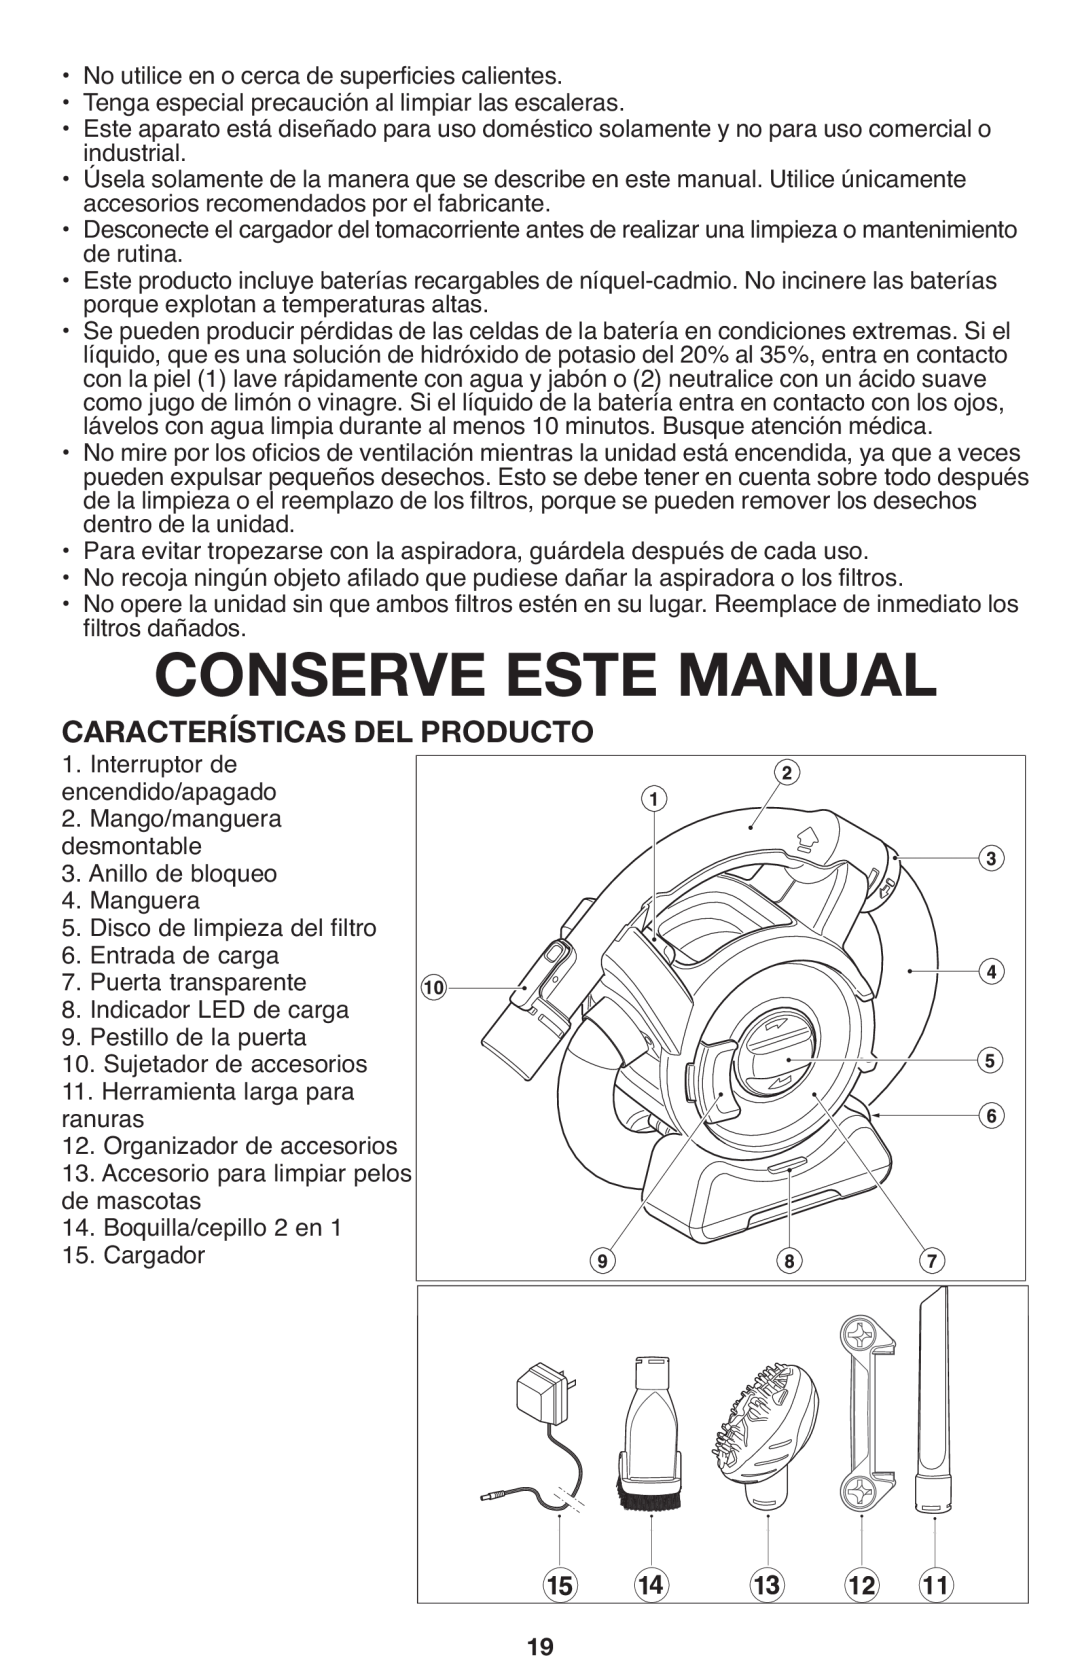 Black & Decker FHV1080, FHV1200 manual Conserve Este Manual, CARACTERÍSTICAS1. Interruptor de DEL PRODUCTO encendido/apagado 